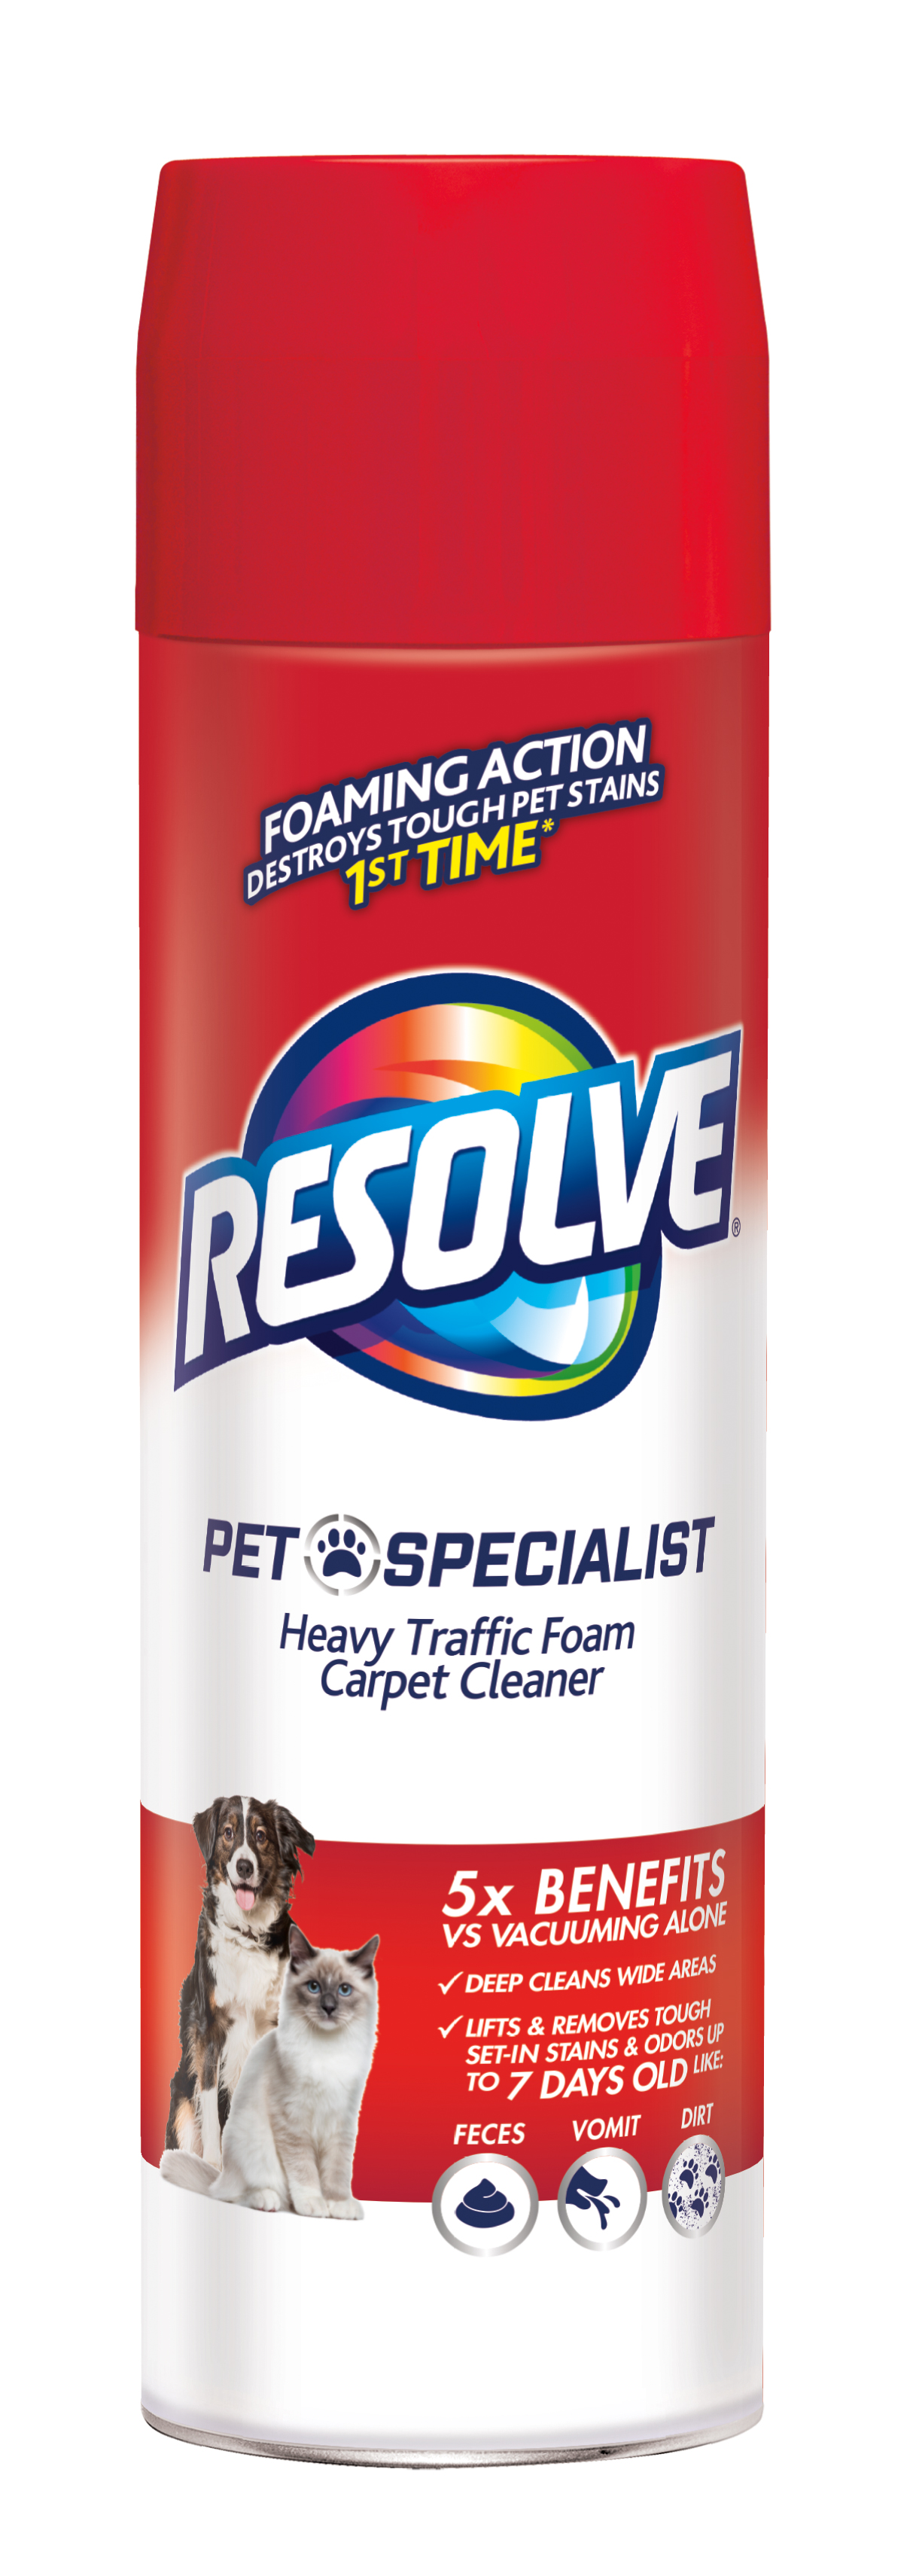 RESOLVE Pet Specialist Heavy Traffic Foam Carpet Cleaner